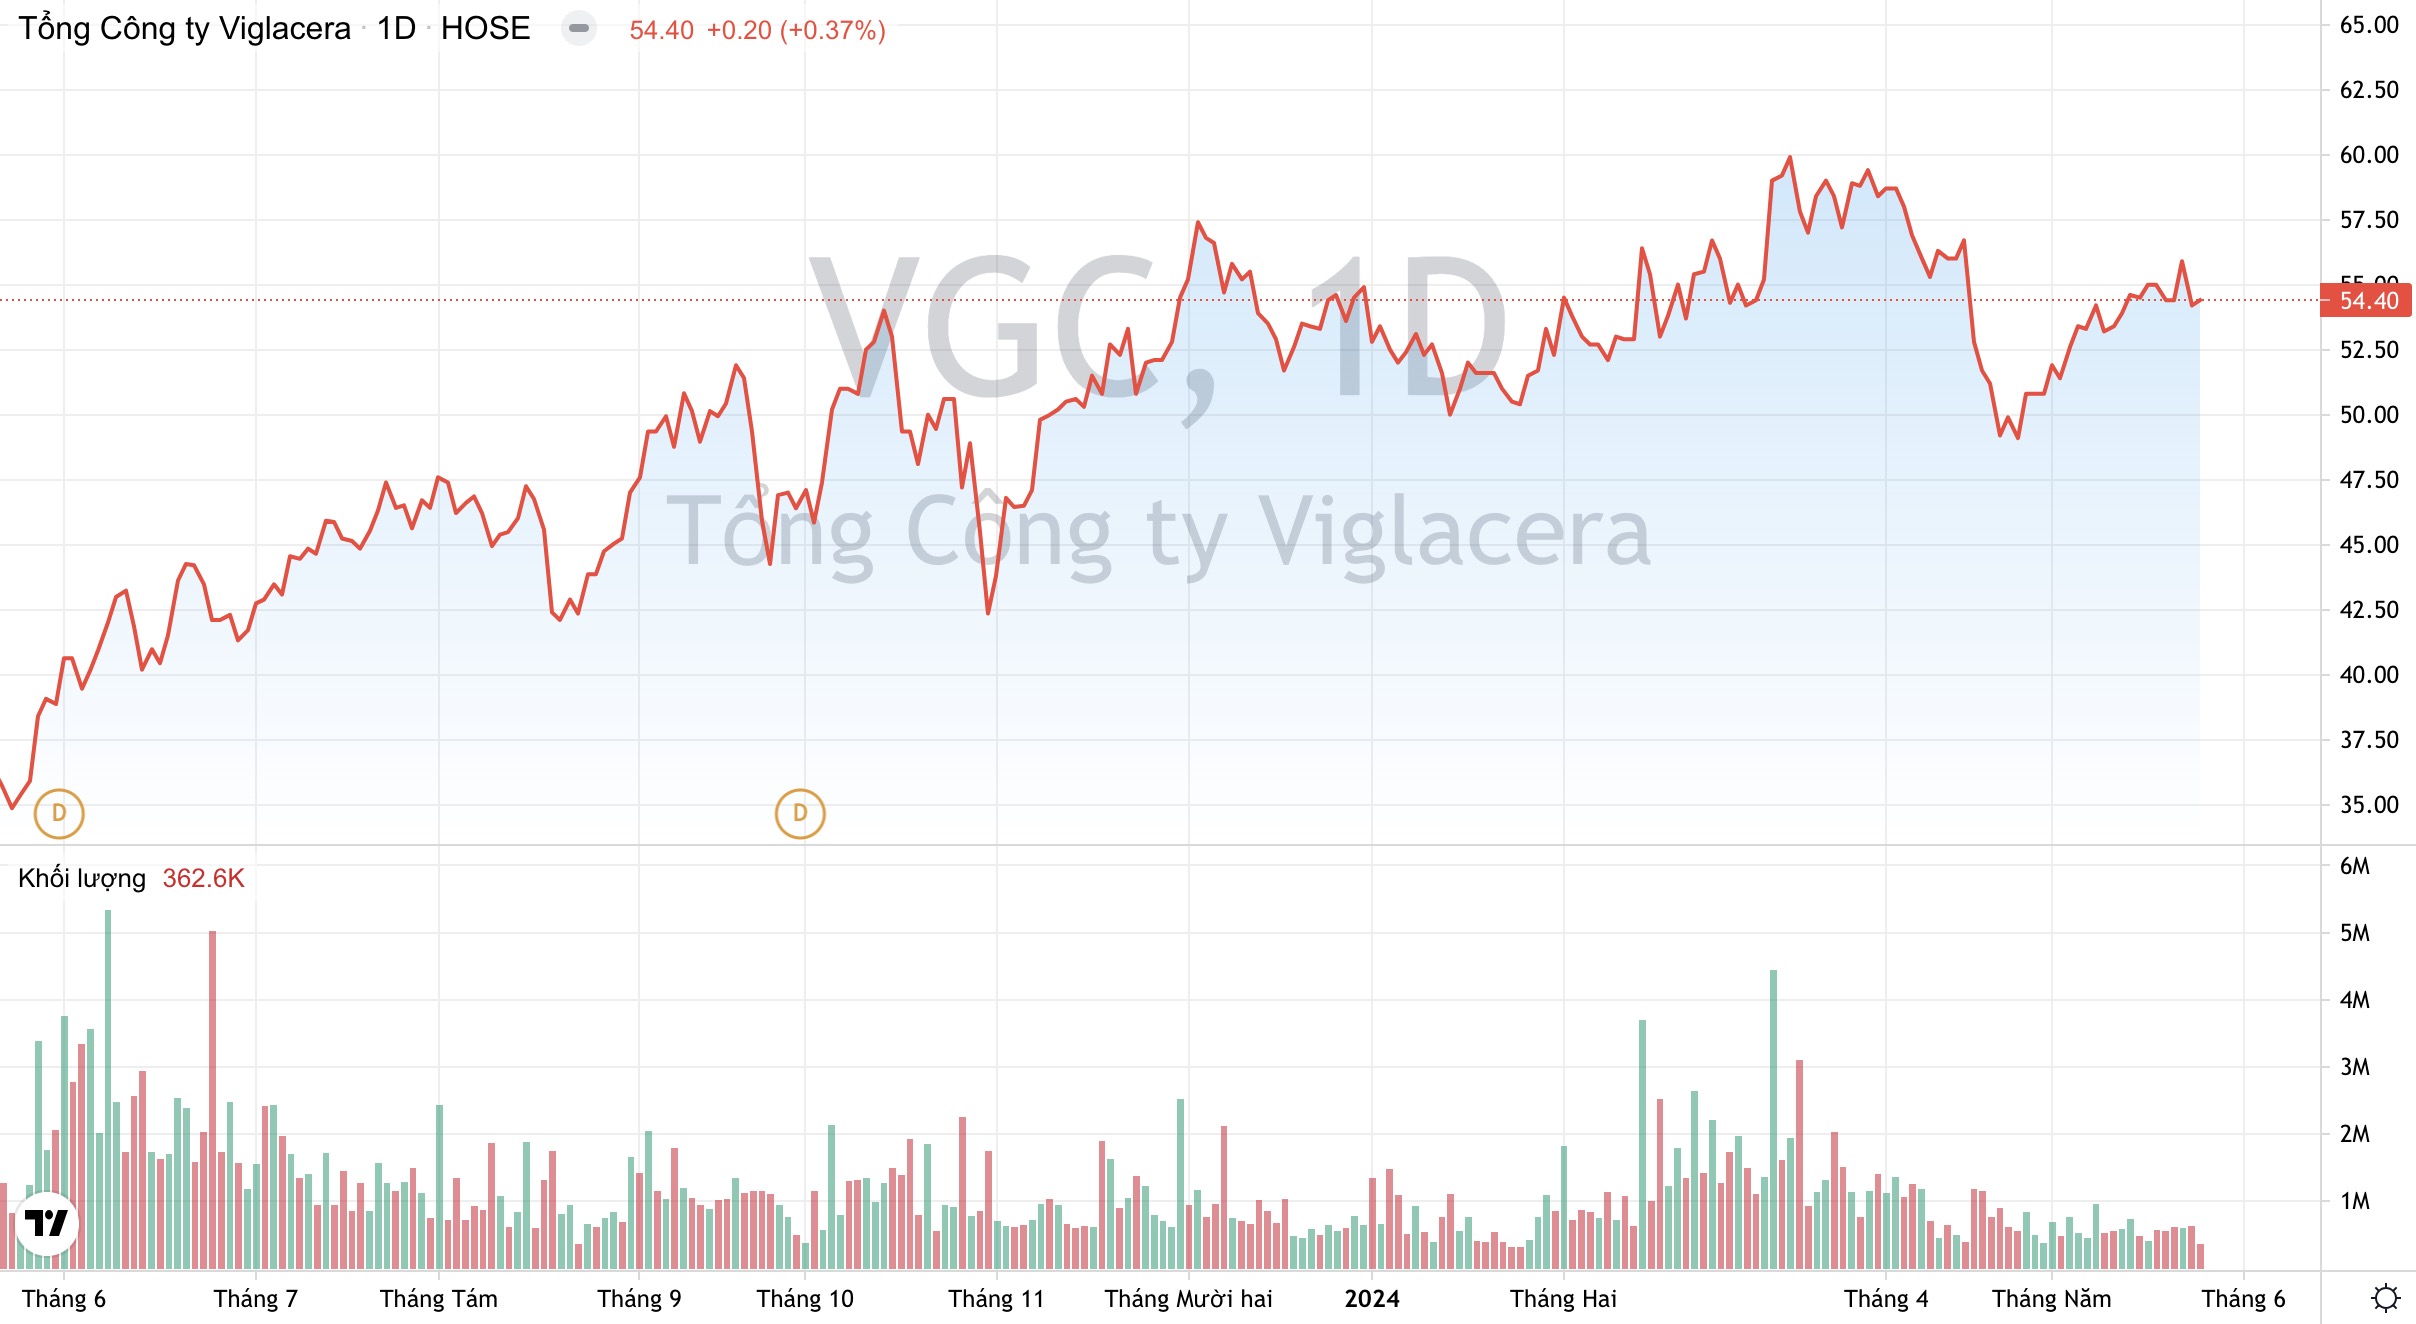 Giá cổ phiếu VGC Tổng Công ty Viglacera